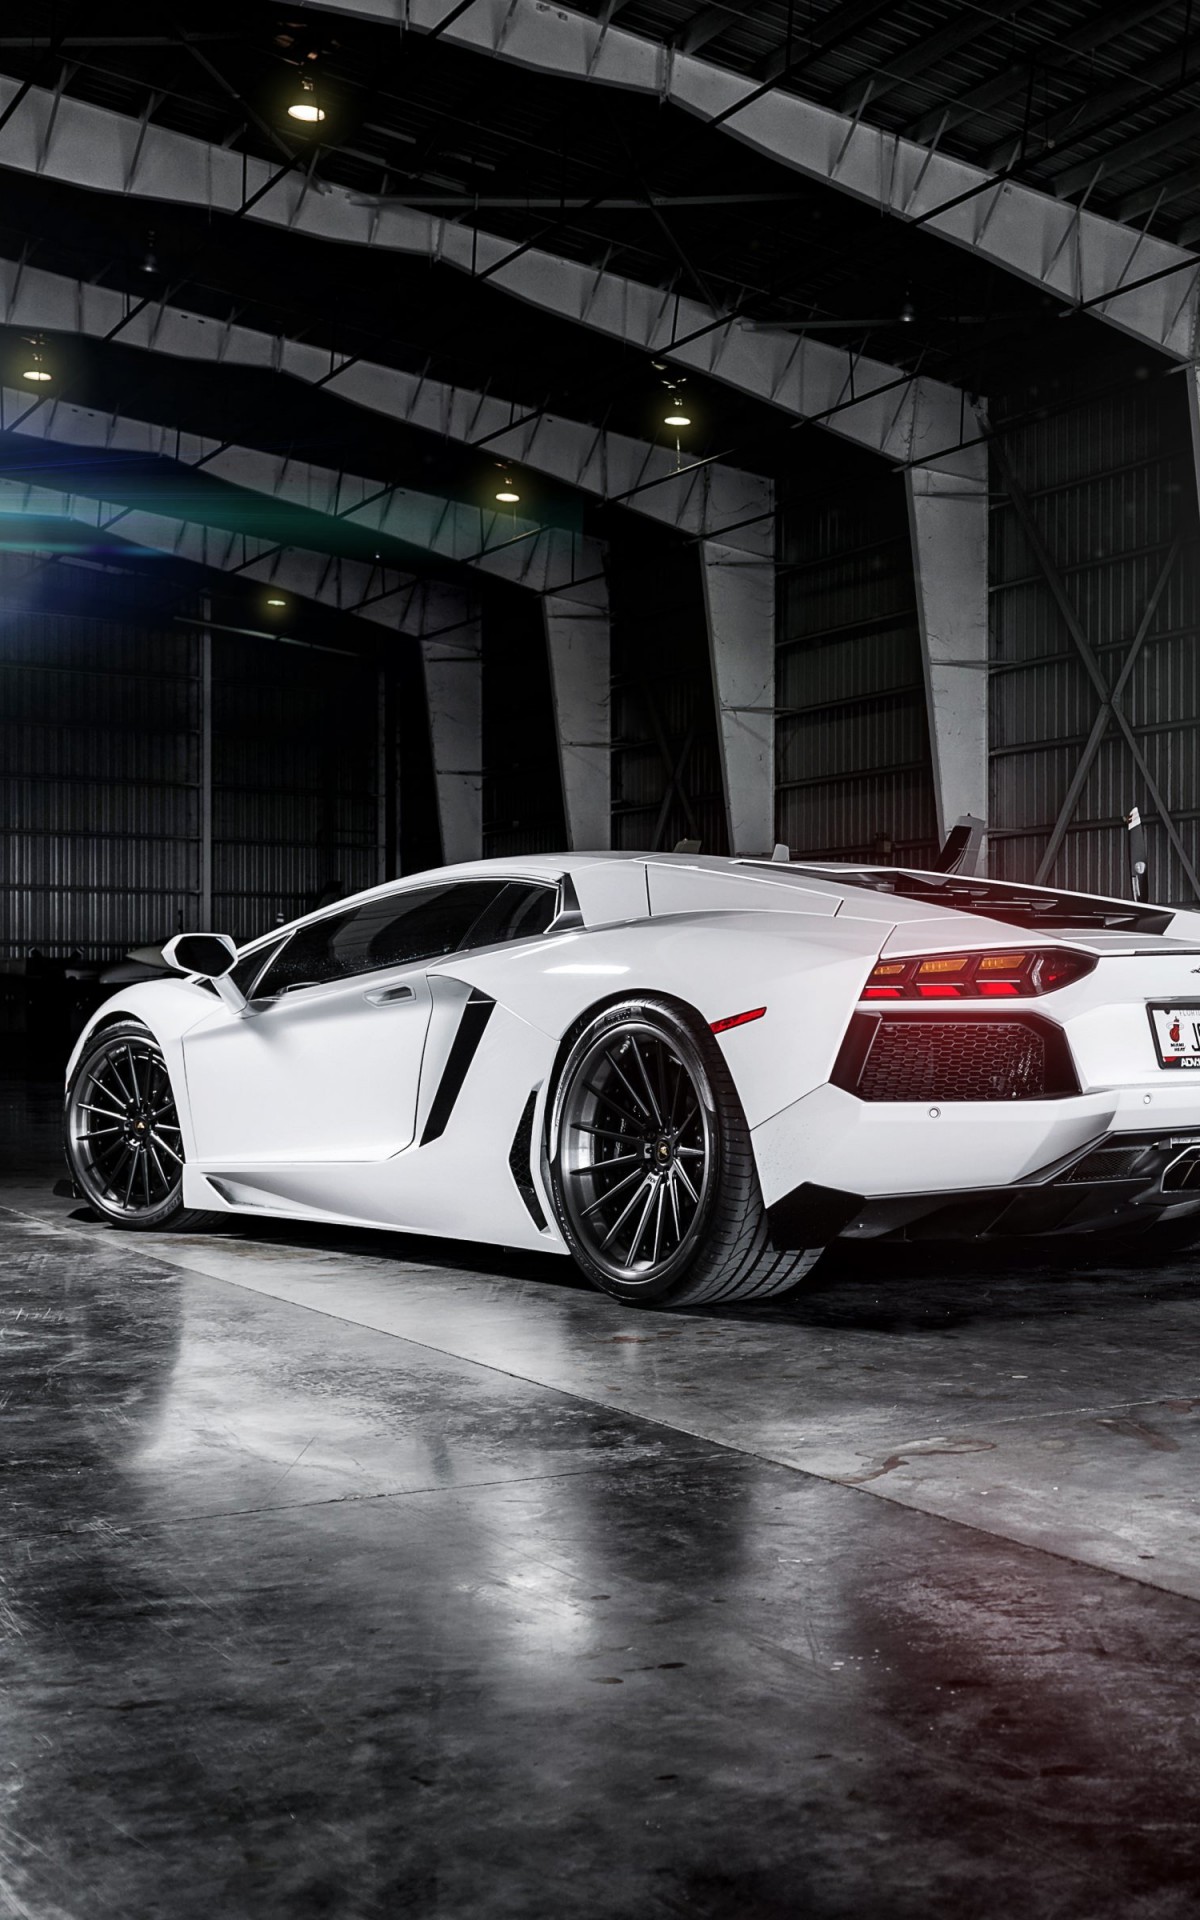 White Lamborghini Aventador Wallpaper for Amazon Kindle Fire HDX